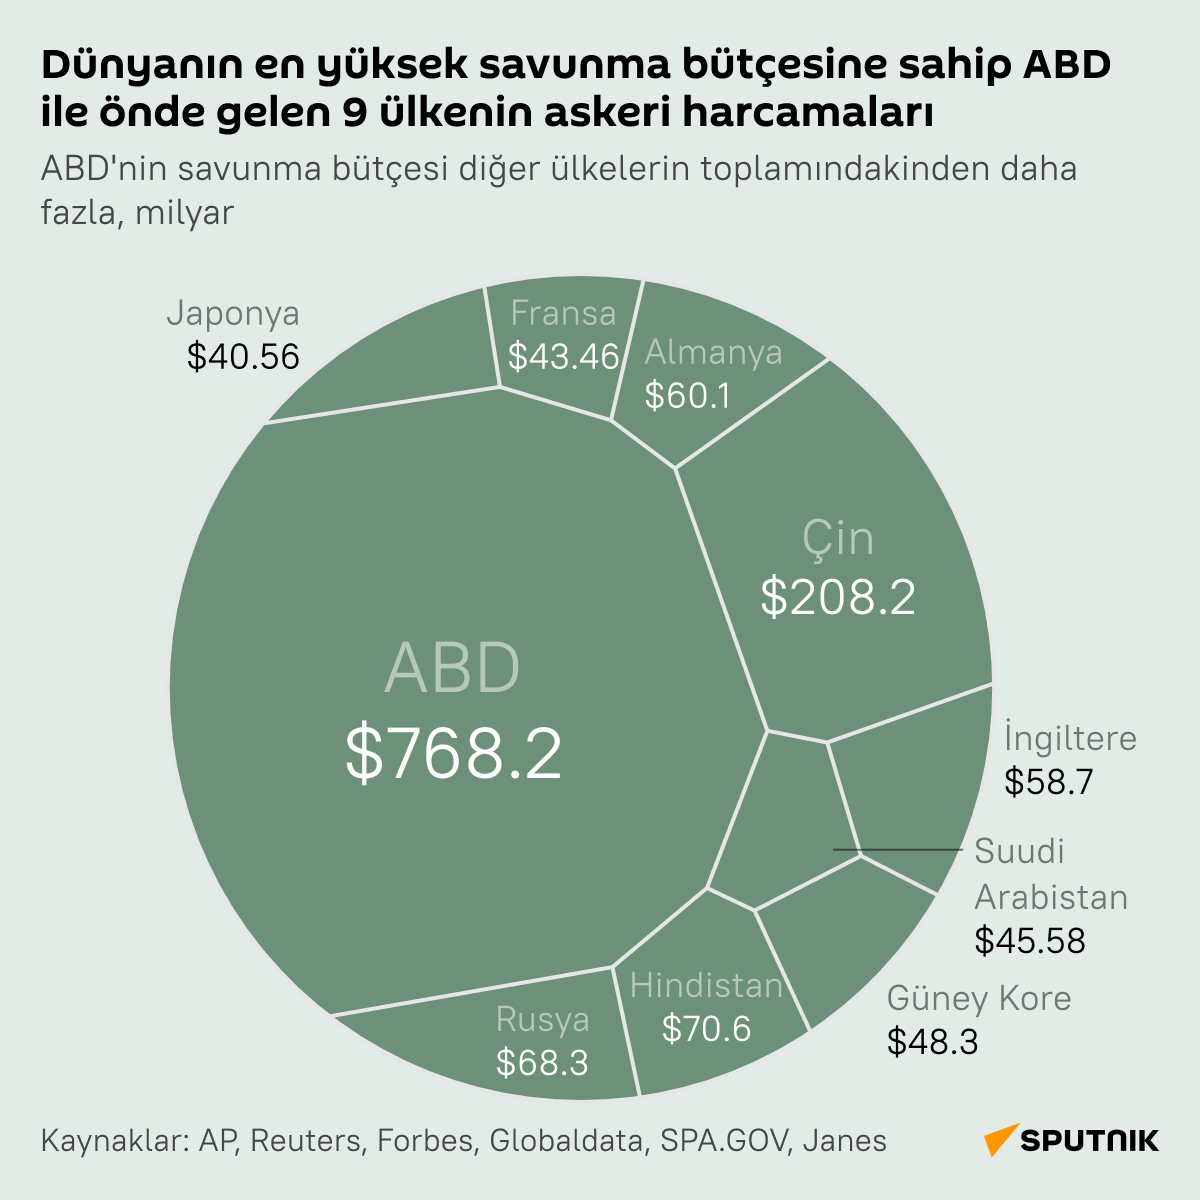 Dünyanın en yüksek savunma bütçesine sahip ABD'nin askeri harcamaları - Sputnik Türkiye